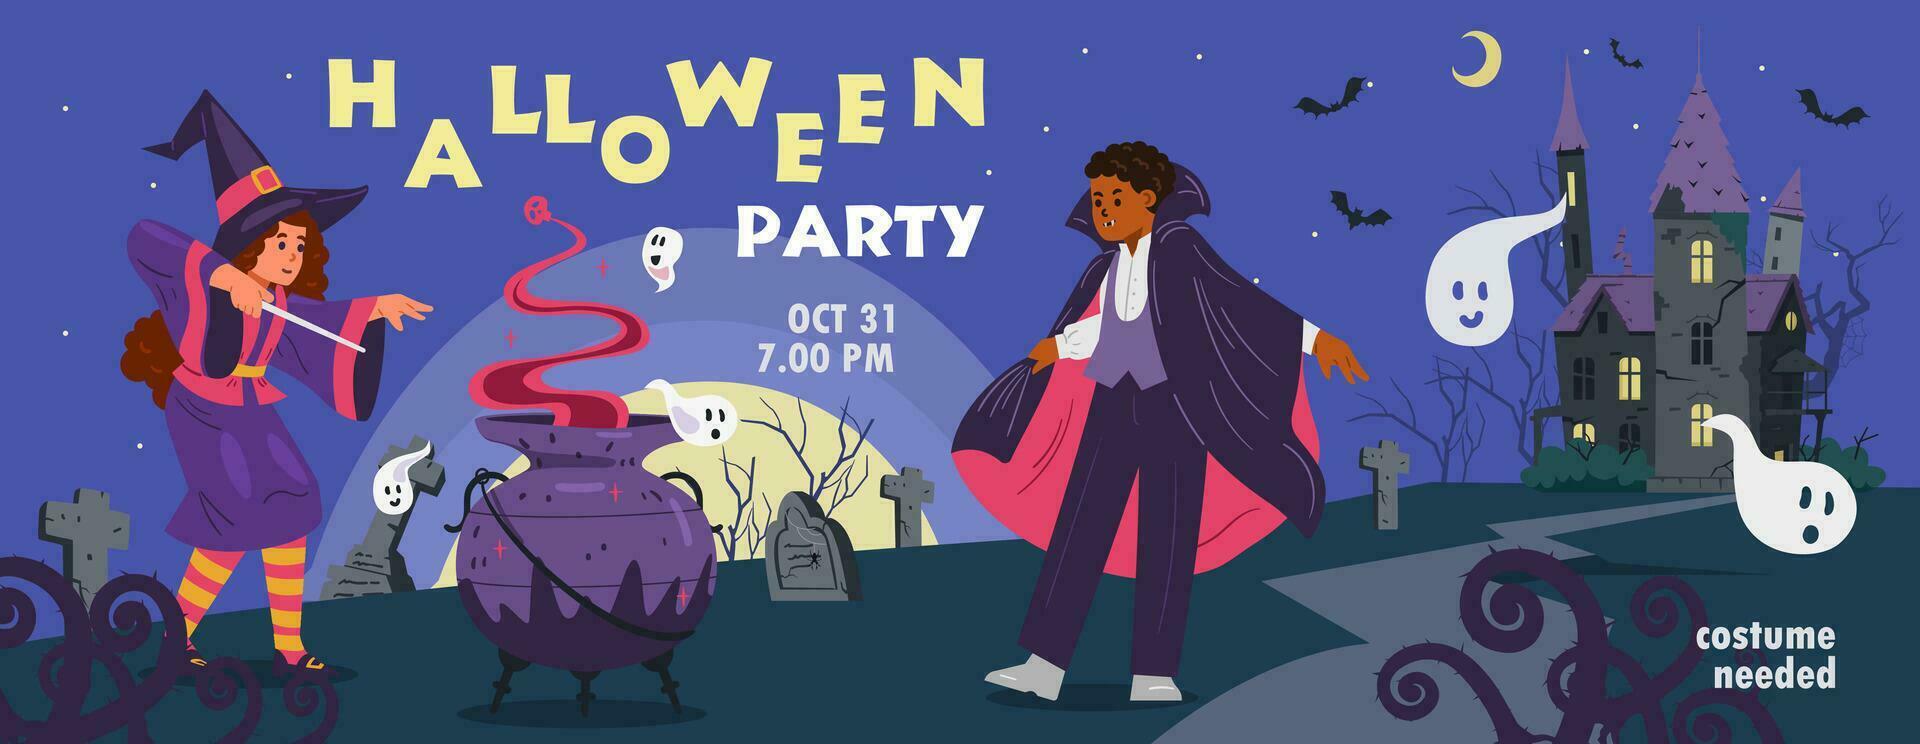 Halloween Kinder Party Einladung Vektor Banner. Nacht Landschaft mit gruselig alt Schloss und Kinder im Halloween Kostüme.